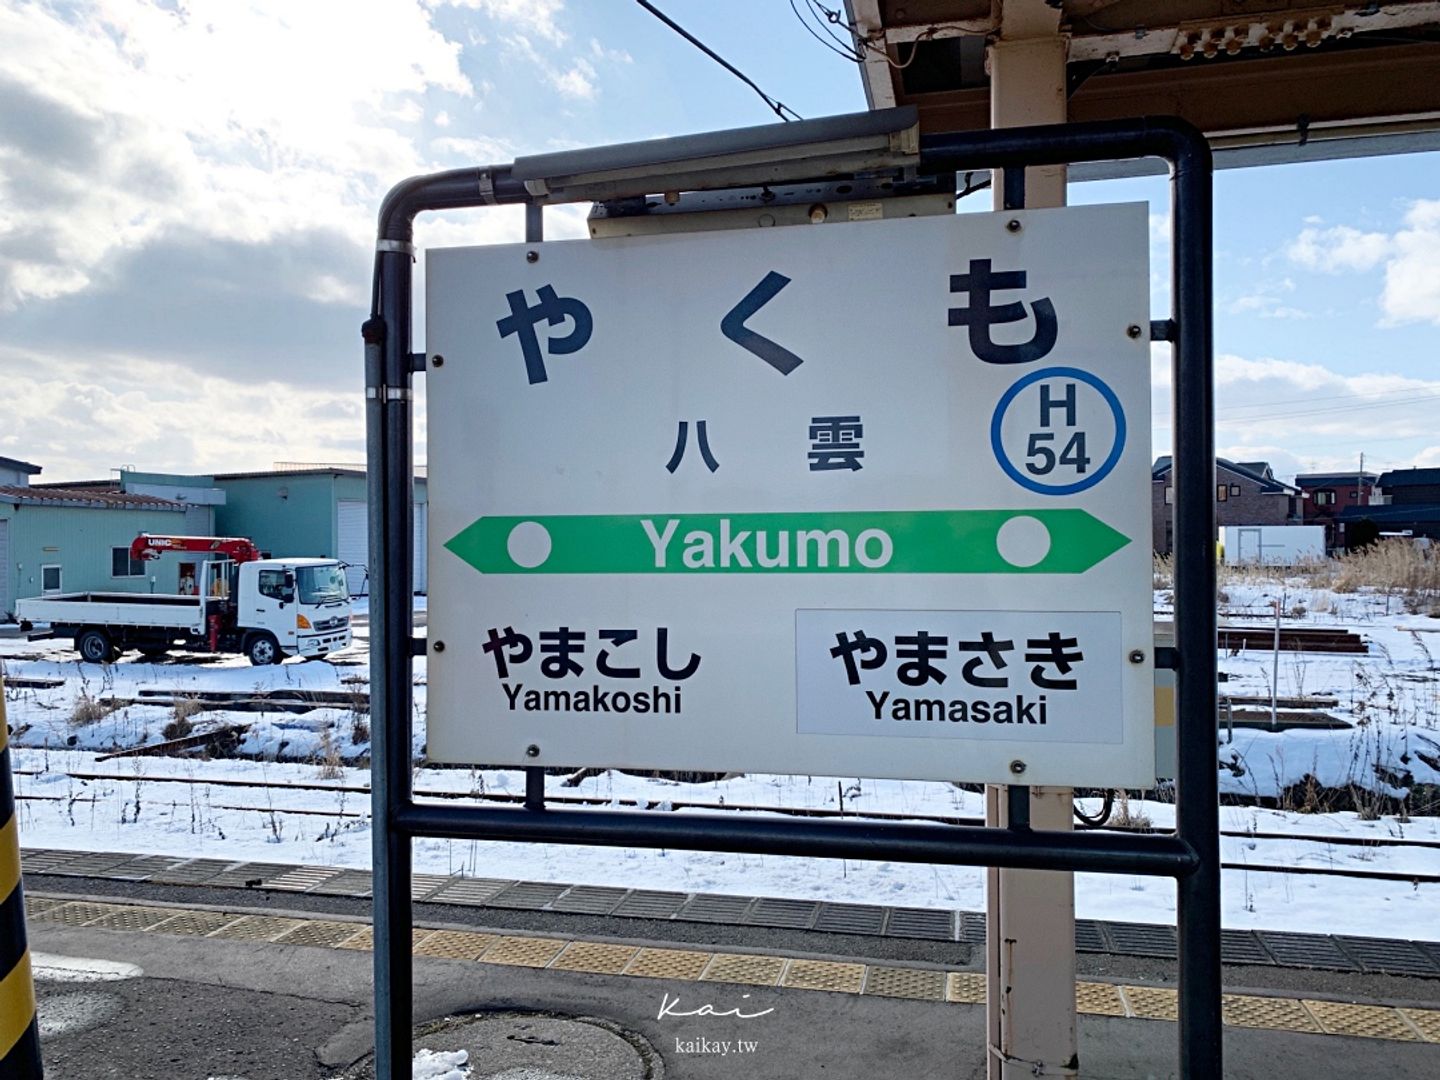 北海道 住宿 八雲町推薦sento青年旅館 Yakumo Village 在地一日遊 凱的日本食尚日記 112 旅行酒吧